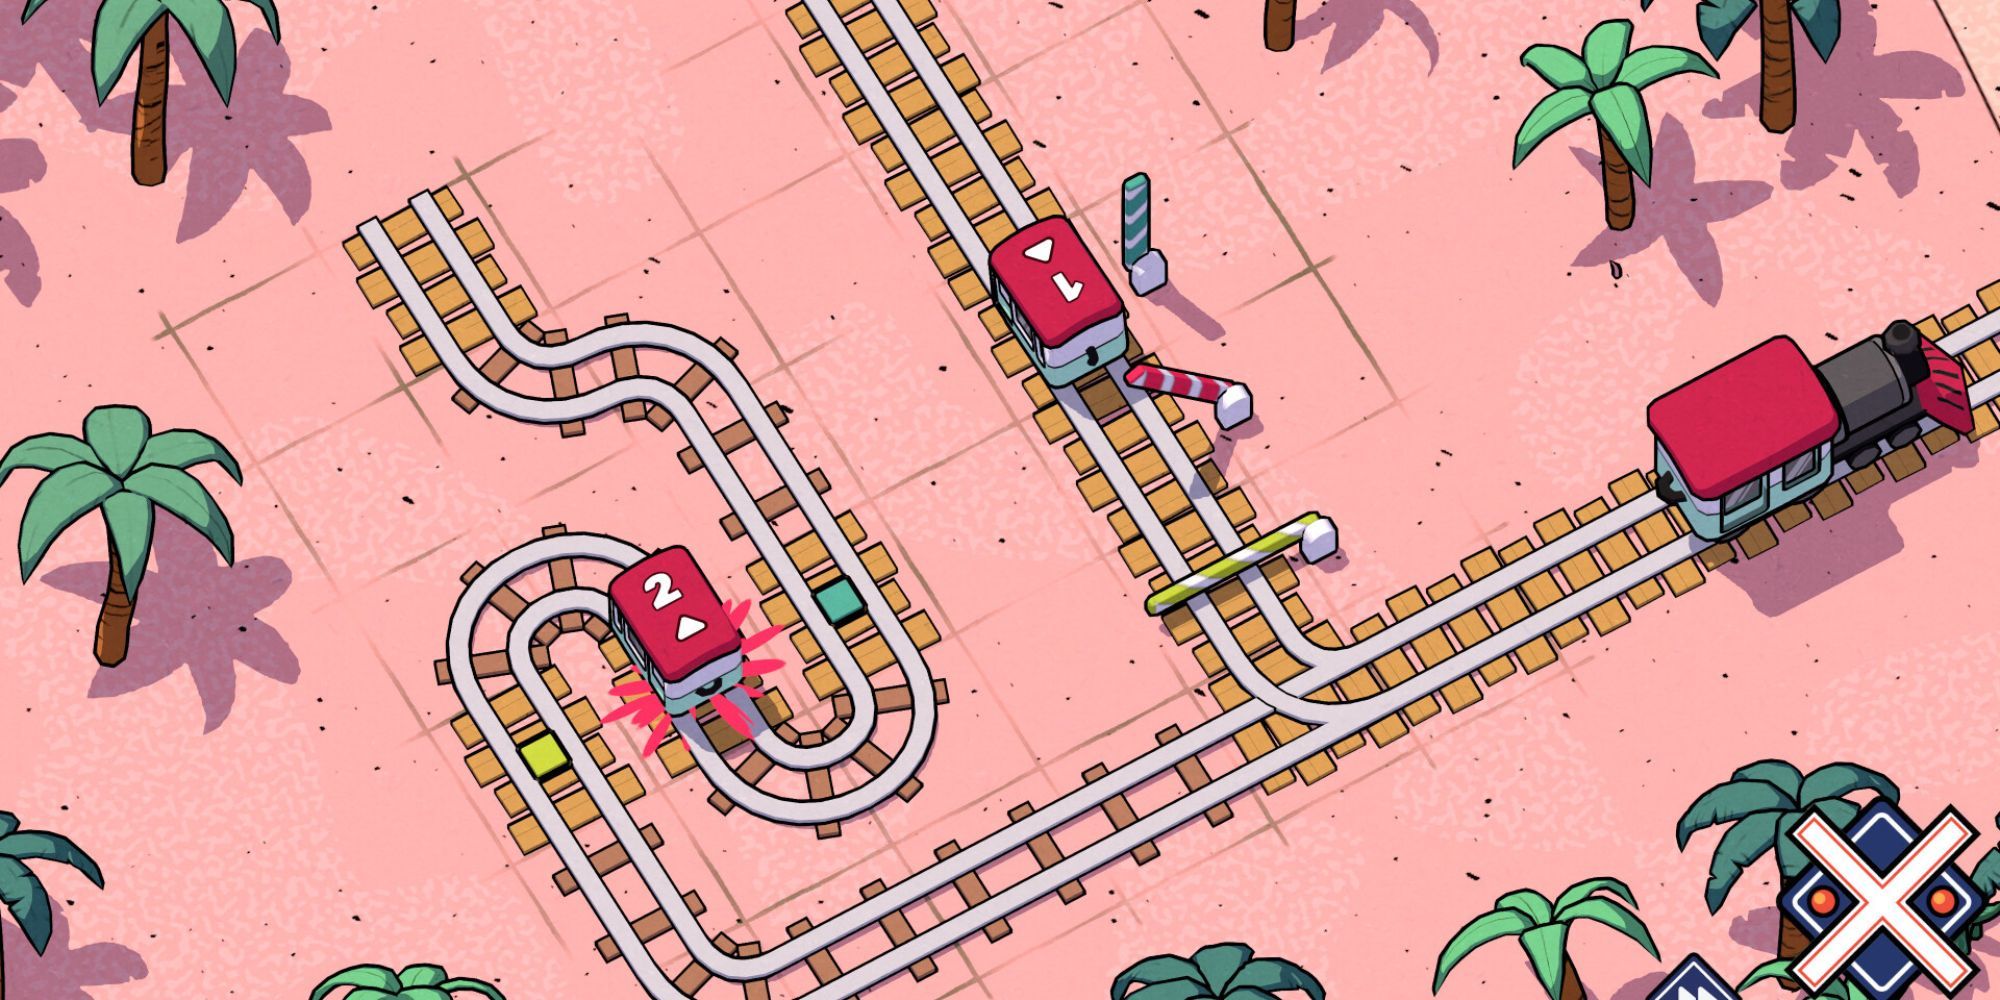 Trains travel across tracks in a desert